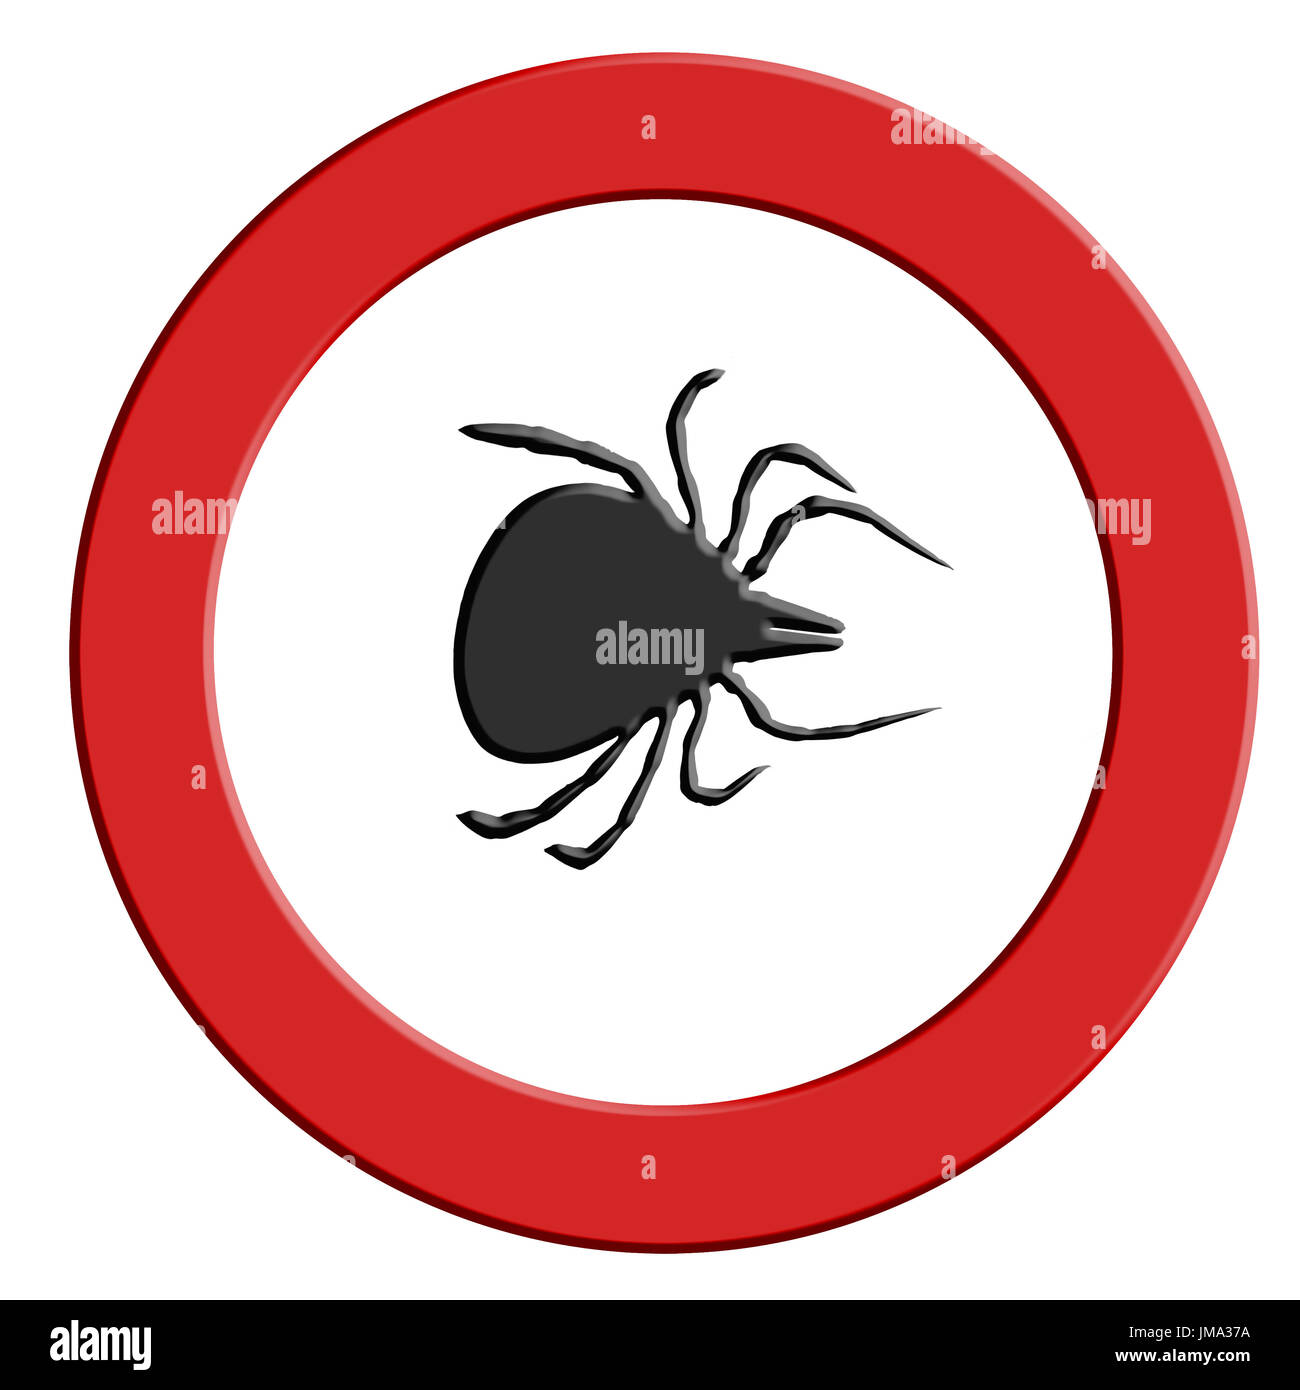 Borreliose und Zecken Warning, runde rote Warnzeichen mit Häkchen-Symbol. Stockfoto